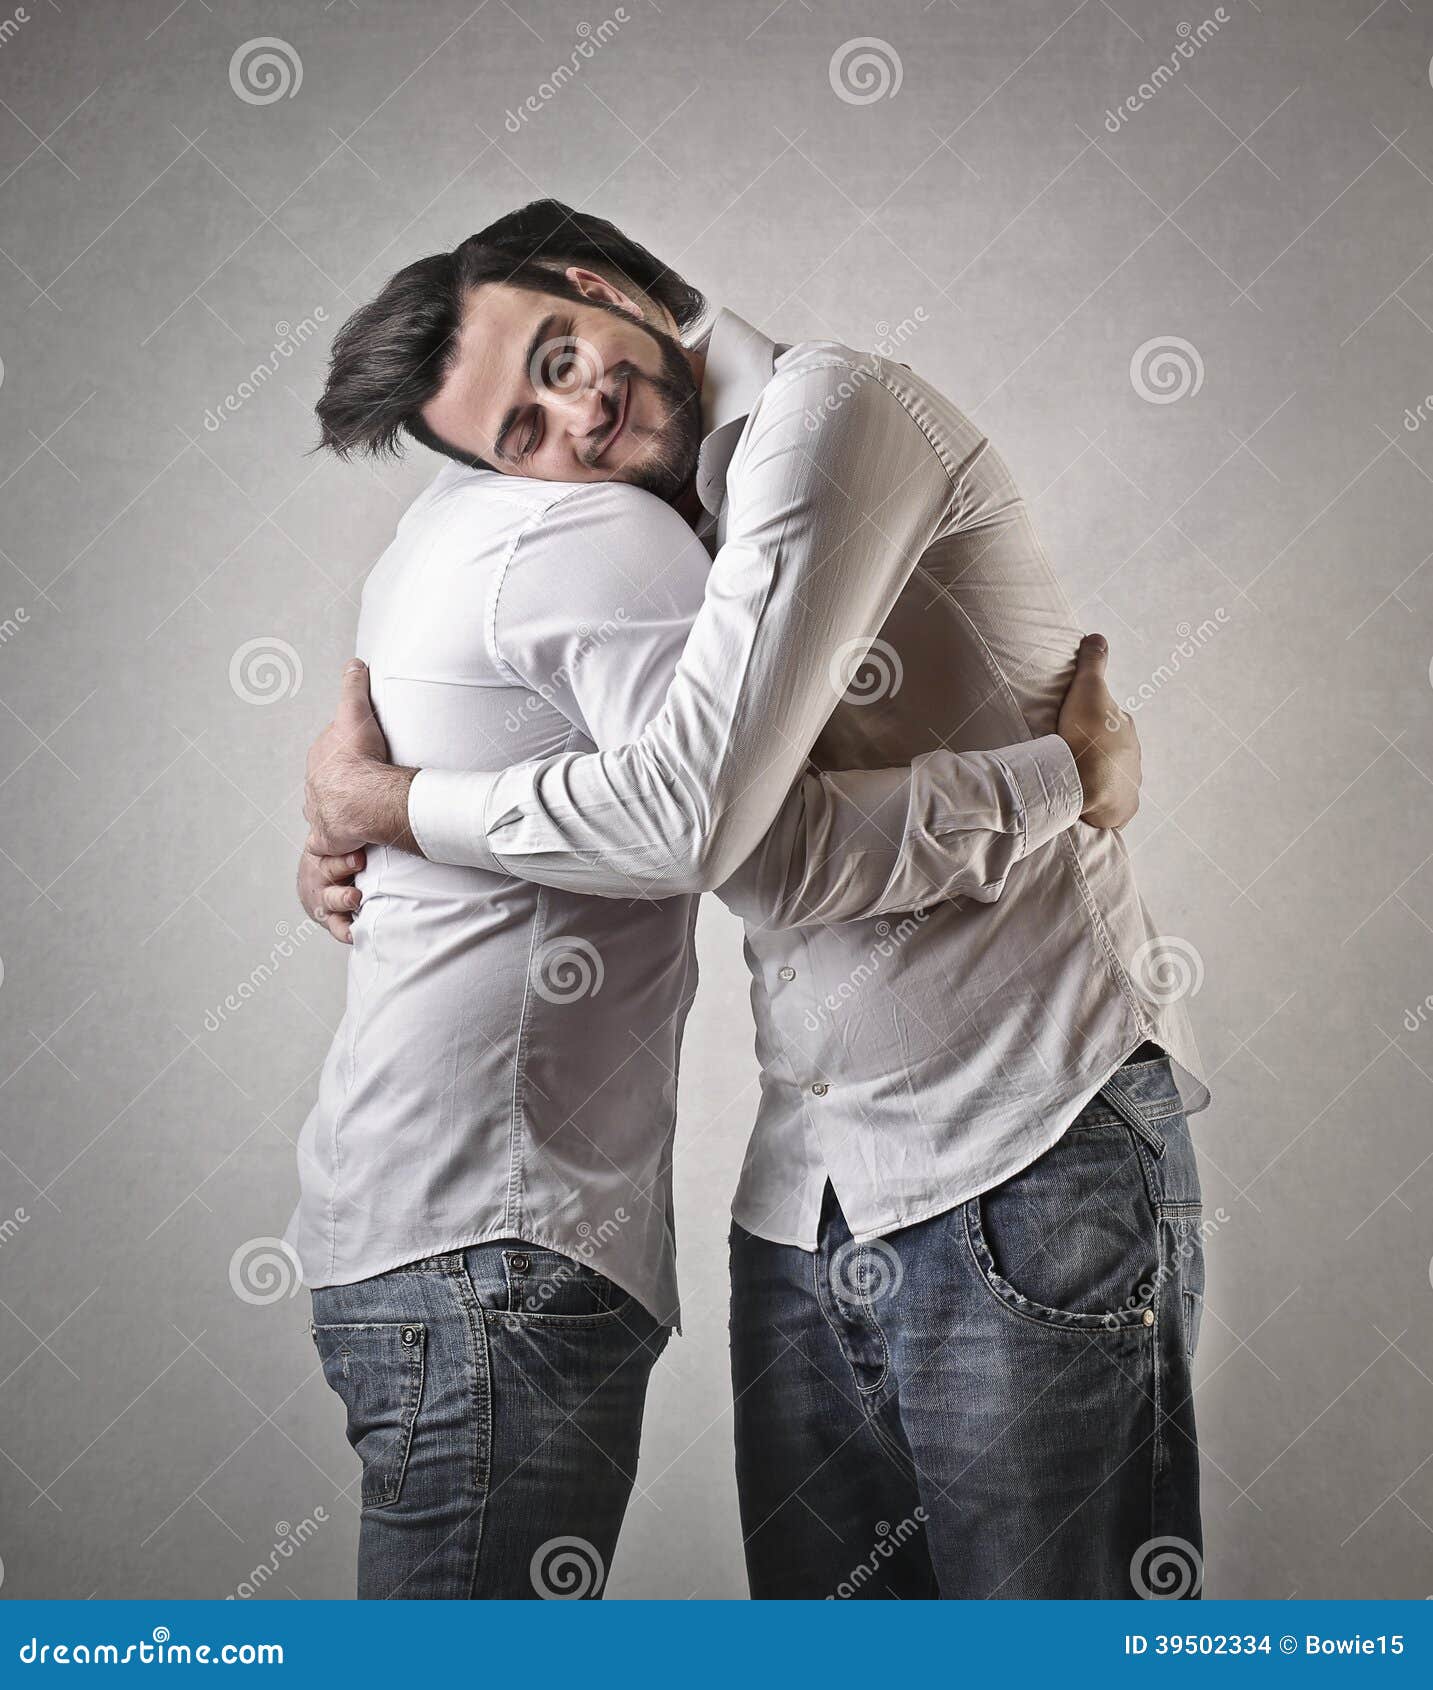 Обнимать рубашку. Дружеские объятия. Два друга обнимаются. Два парня обнимаются. Дружеские объятия мужчин.